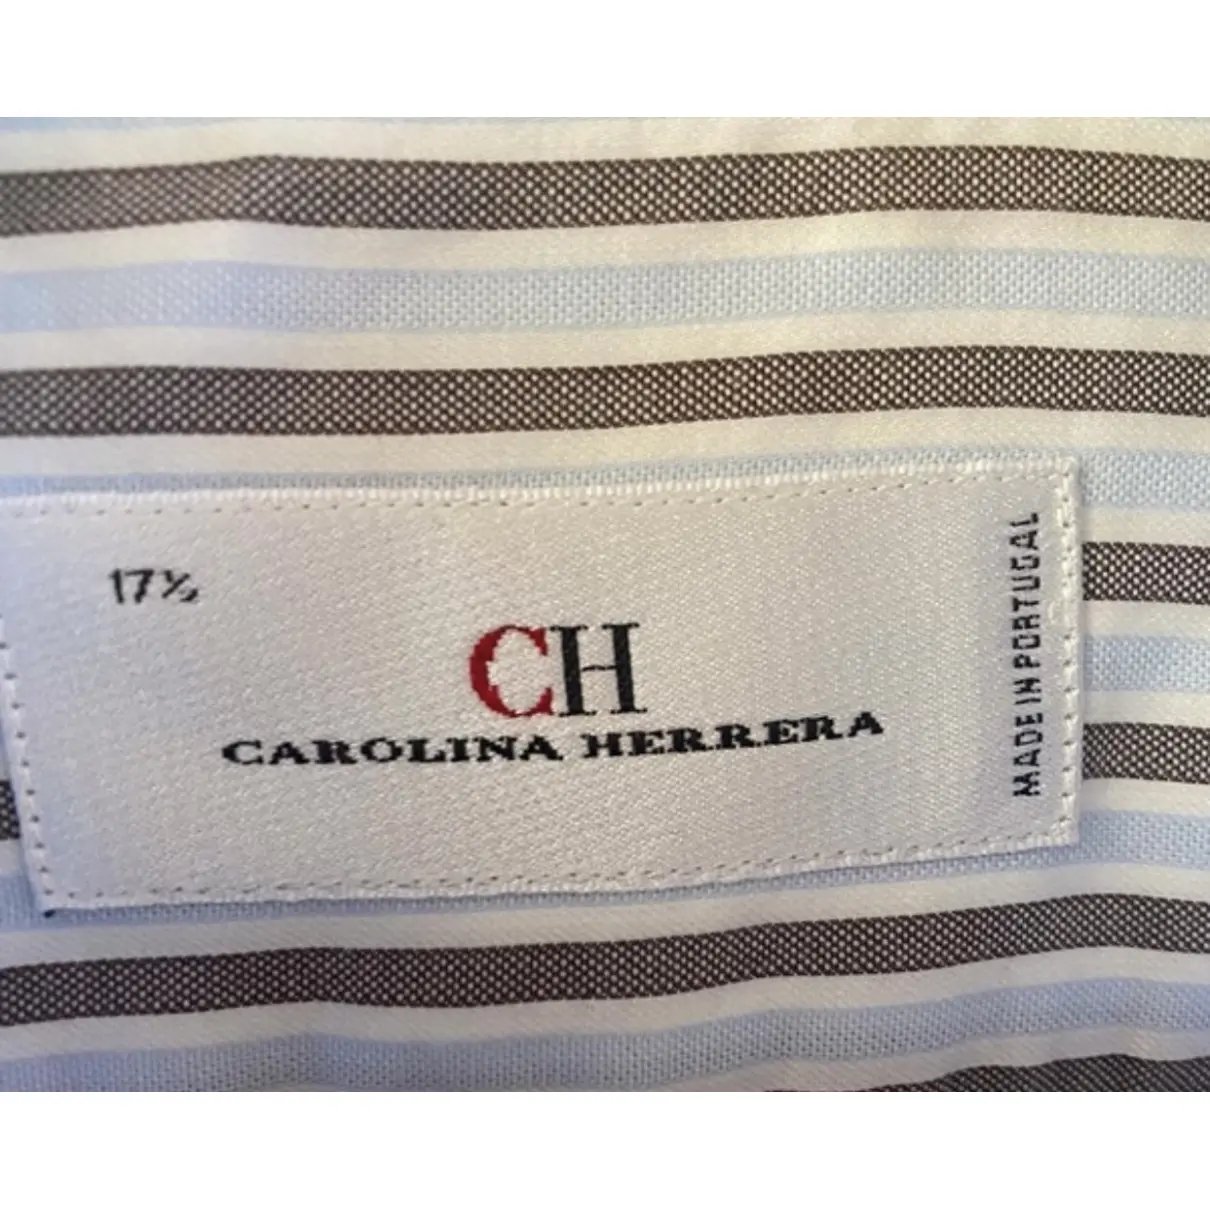 Buy Carolina Herrera Shirt online